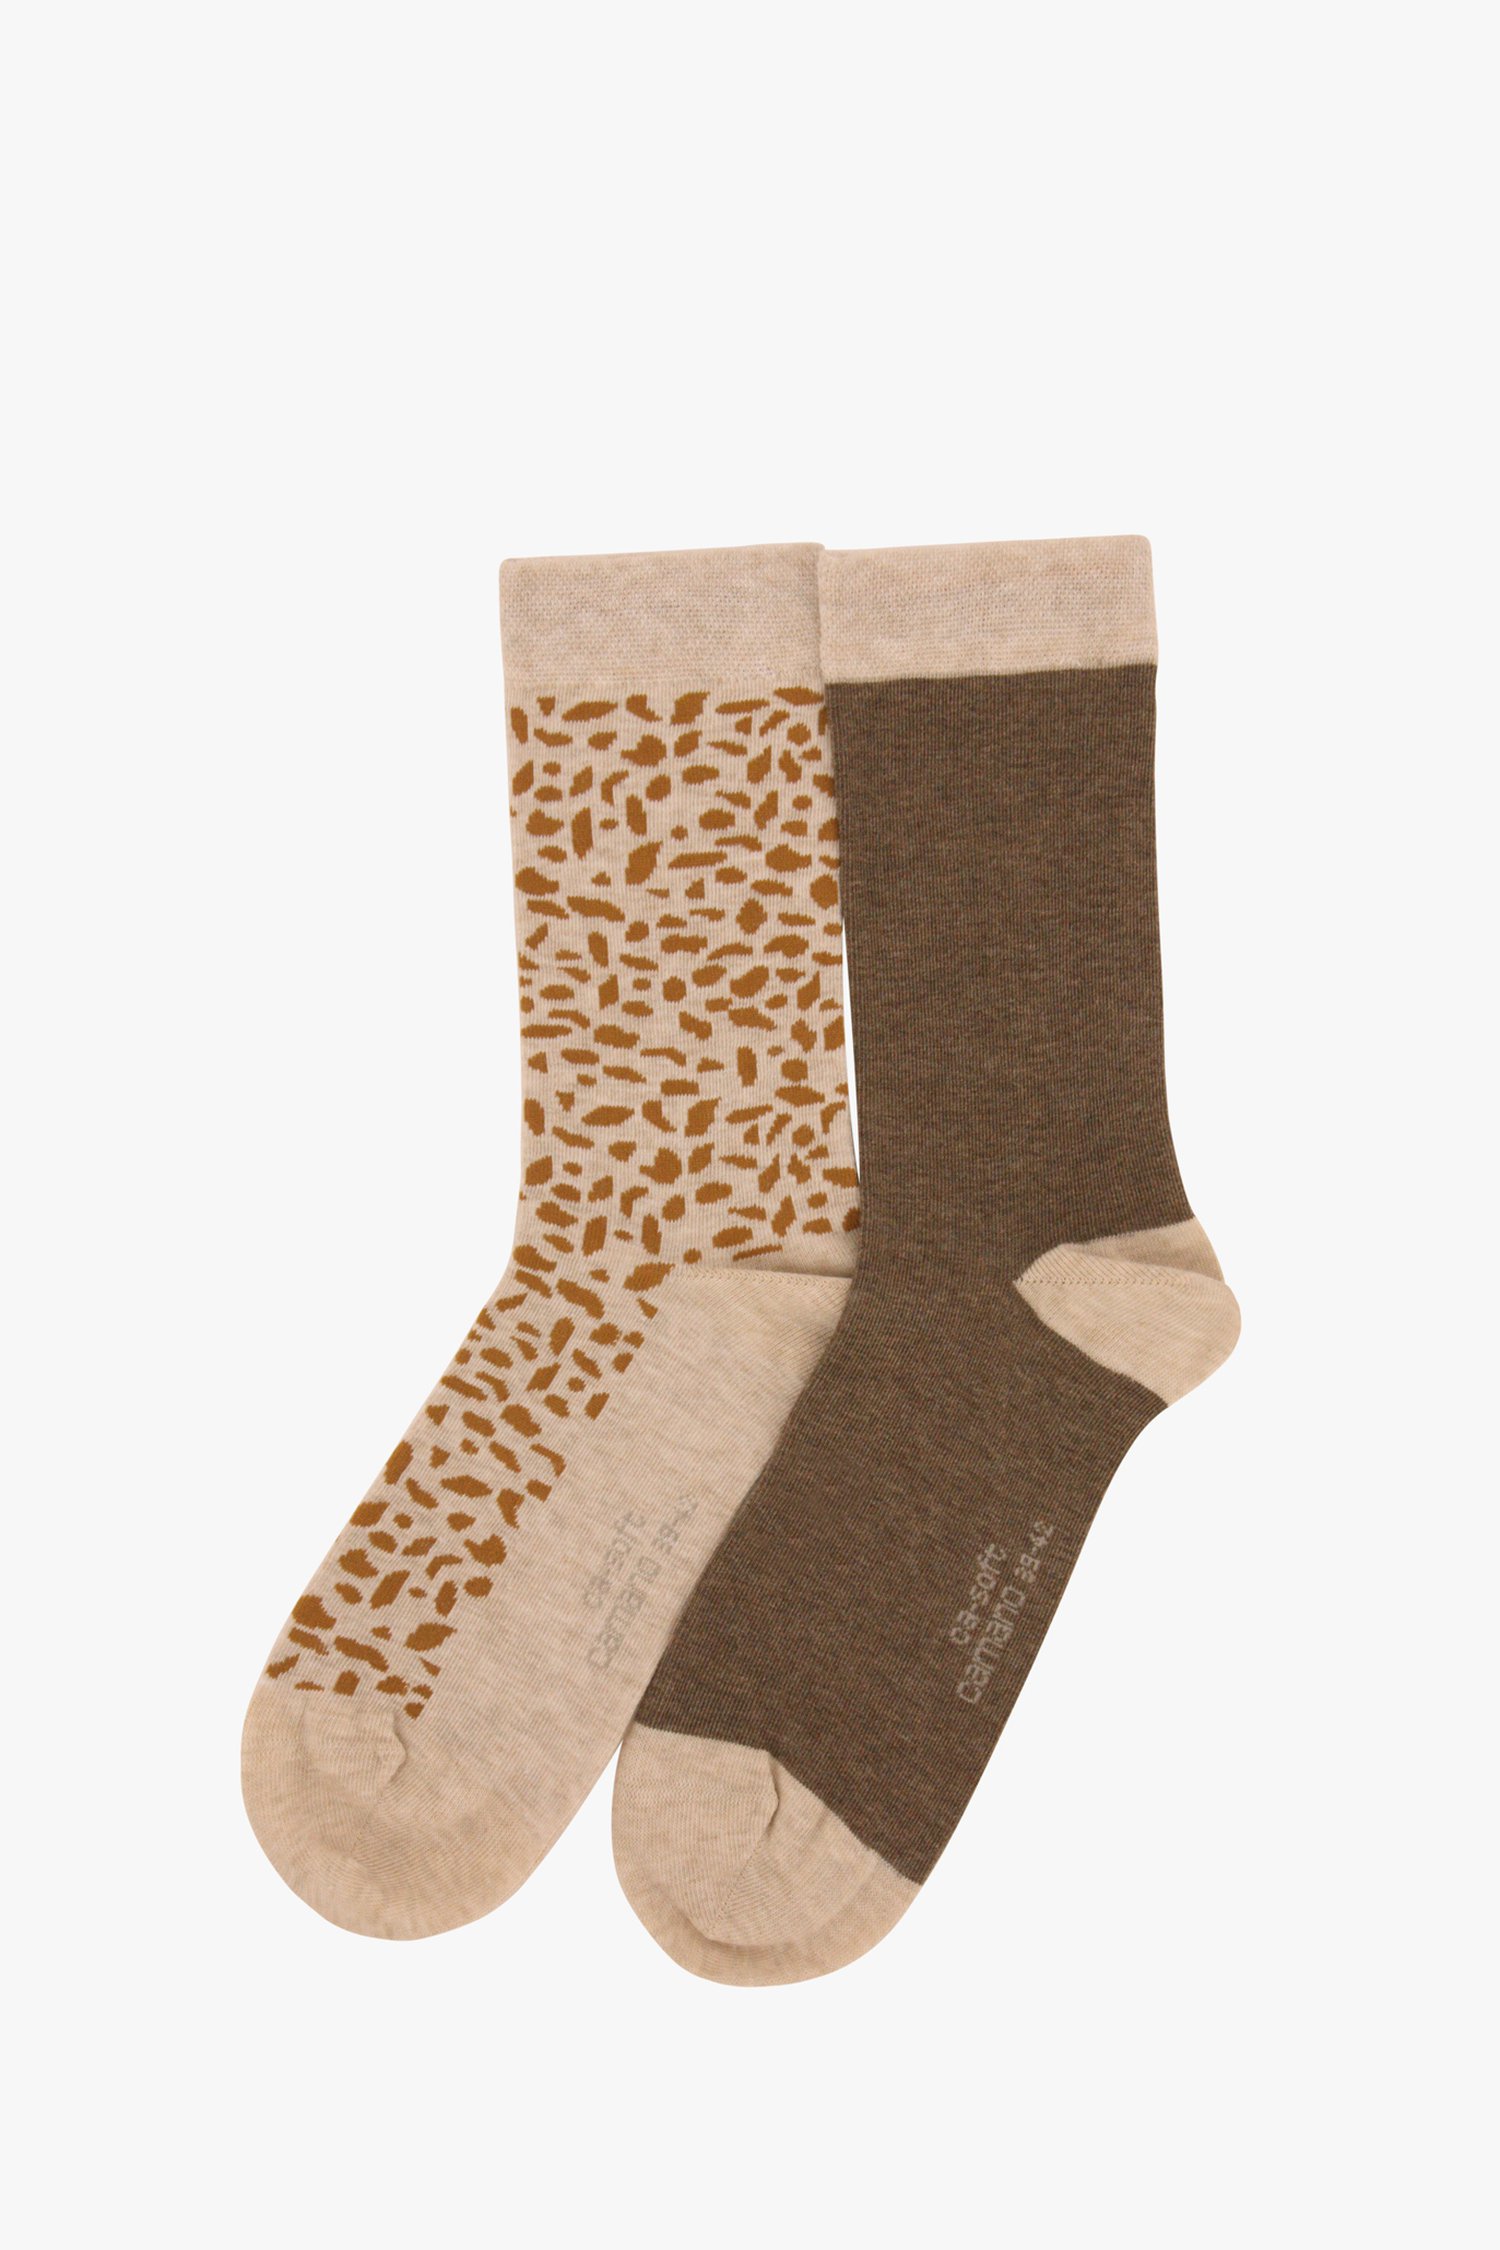 Lelie Kosmisch samenzwering Bruin-beige sokken met print - 2 paar van Camano | 9701919 | e5